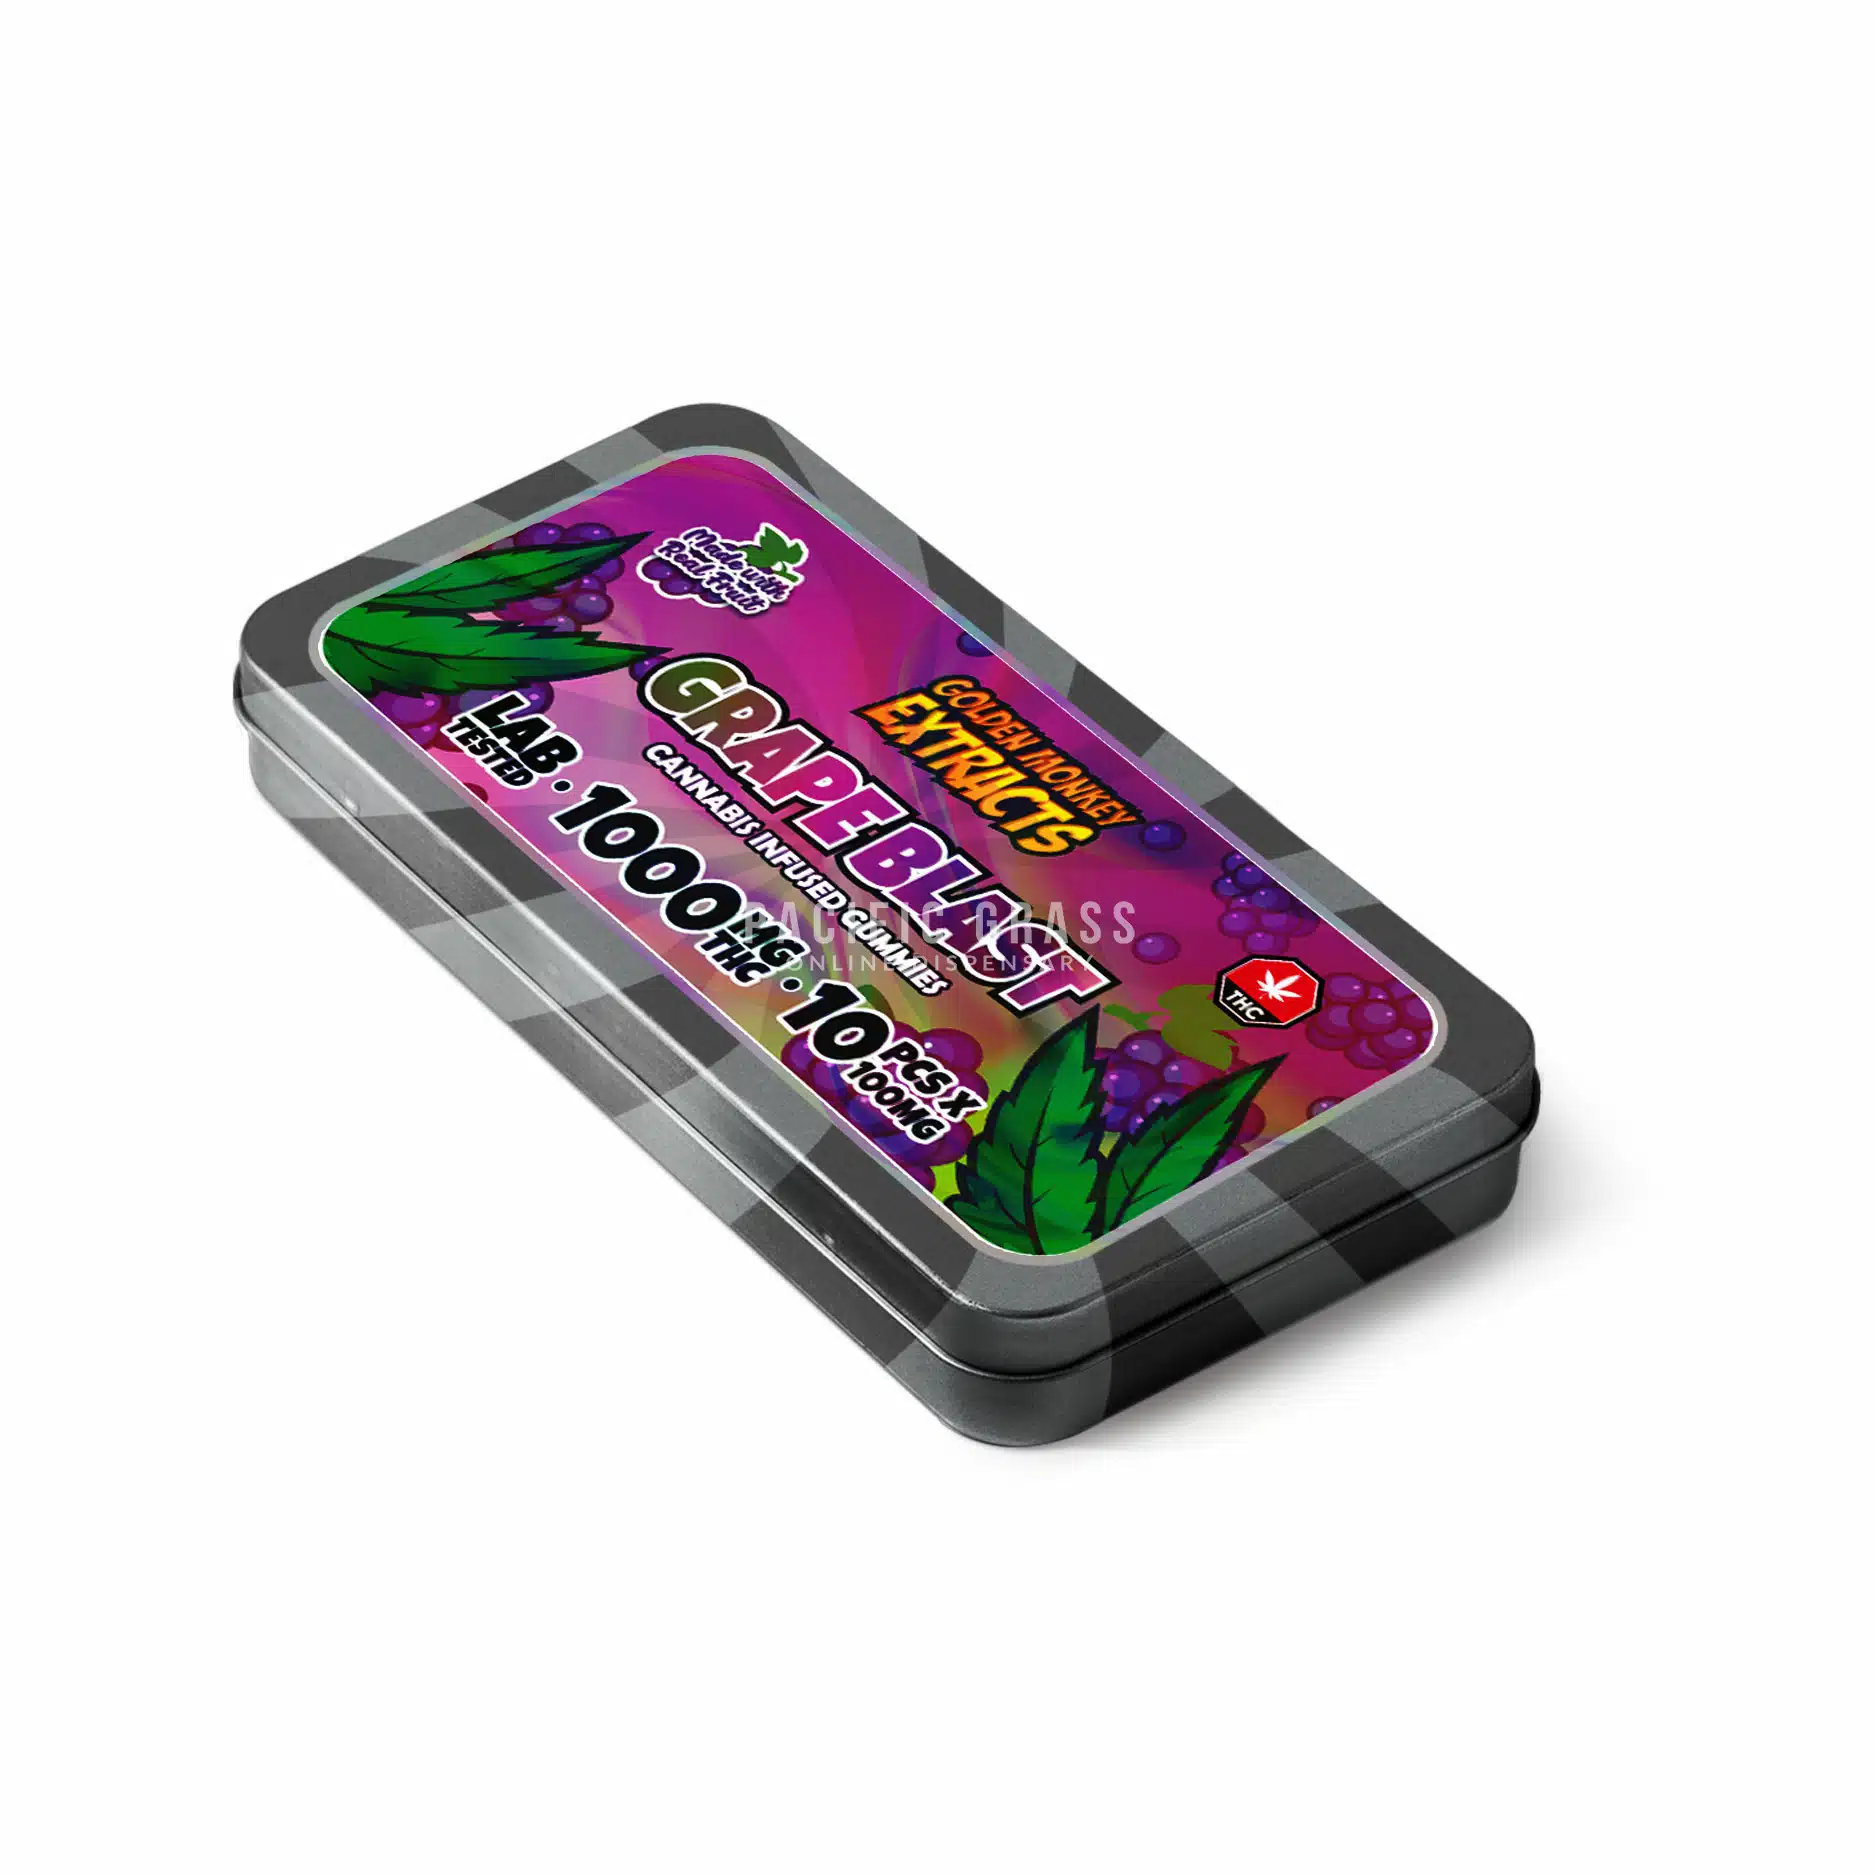 NINJA Blast 18 oz. Single Speed Passion Fruit Purple Portable